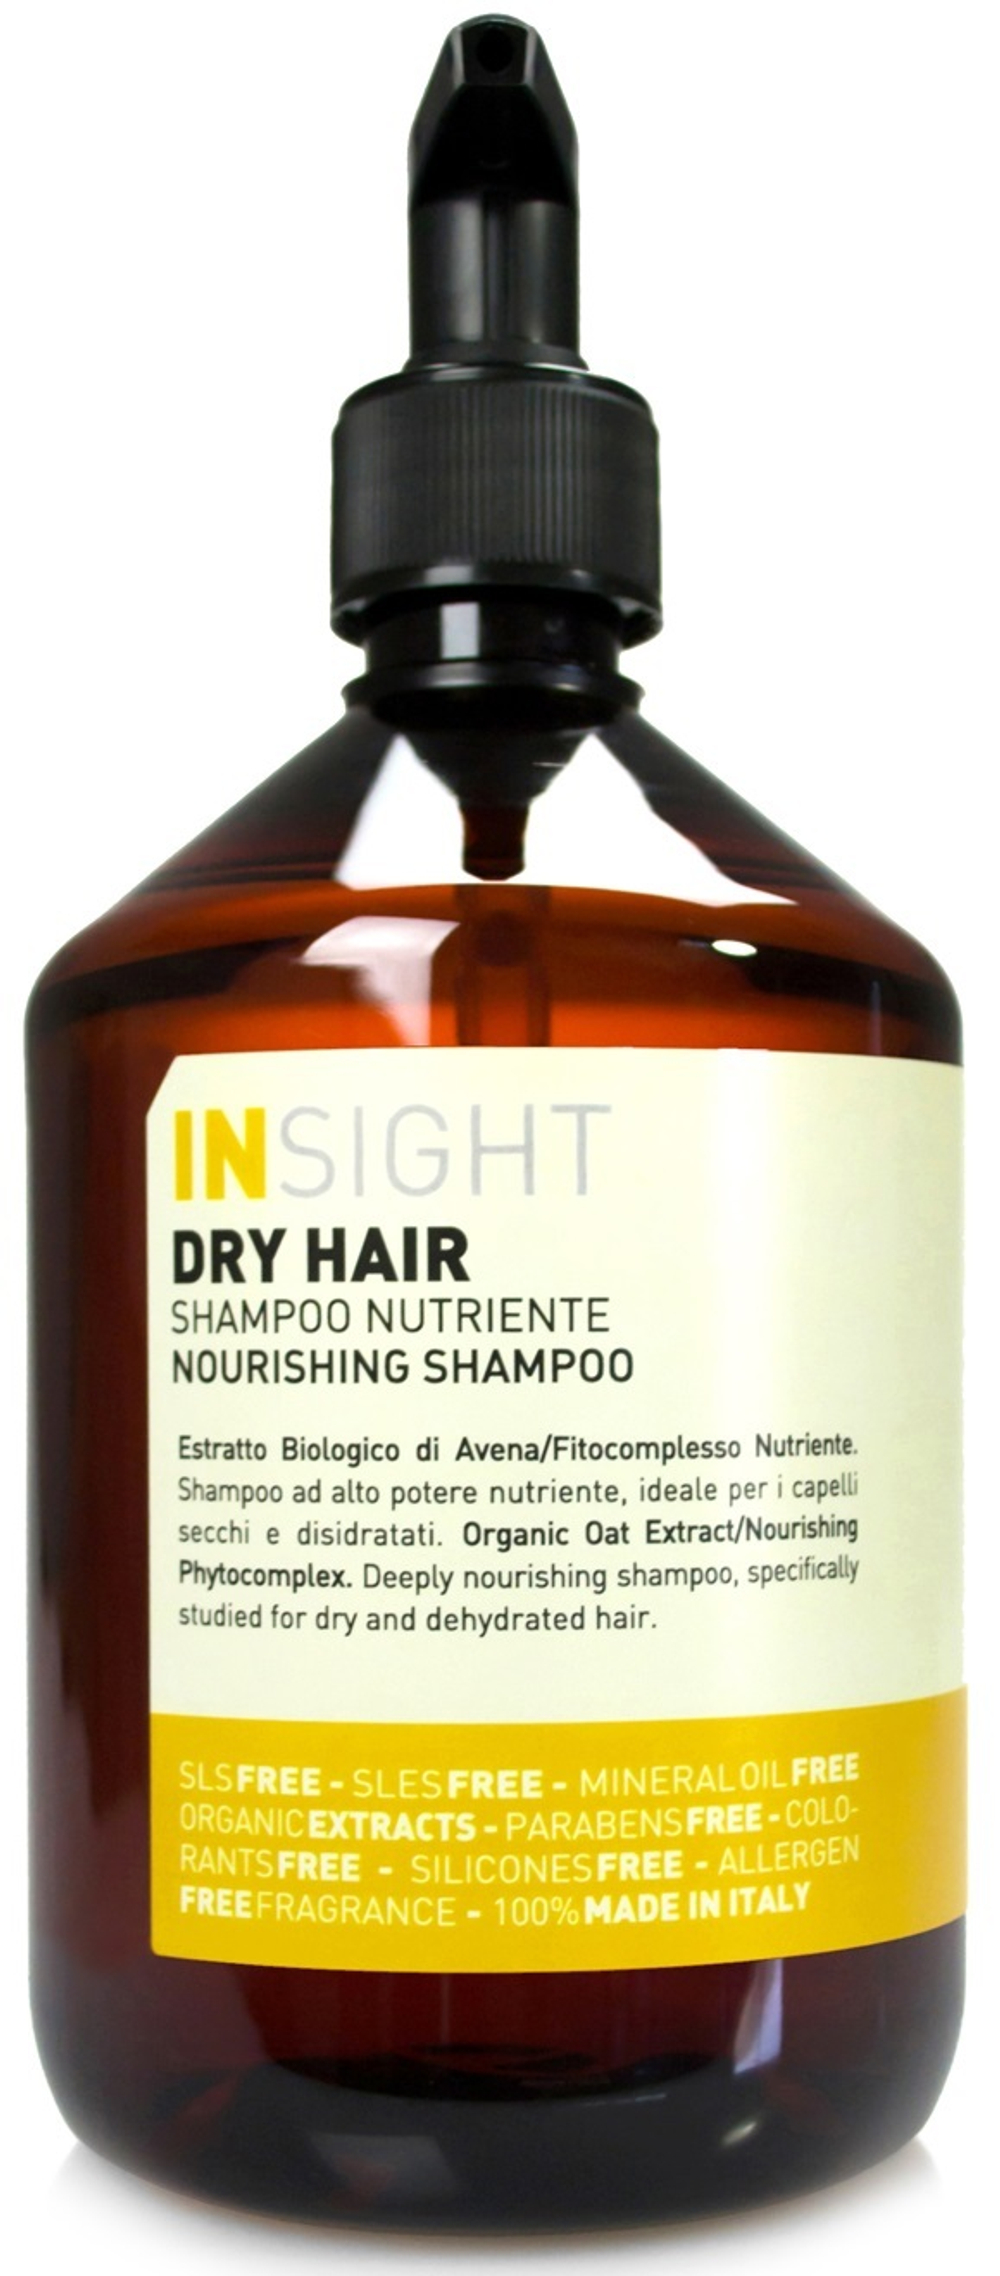 Шампунь для увлажнения и питания сухих волос DRY HAIR, 400 мл, INSIGHT PROFESSIONAL